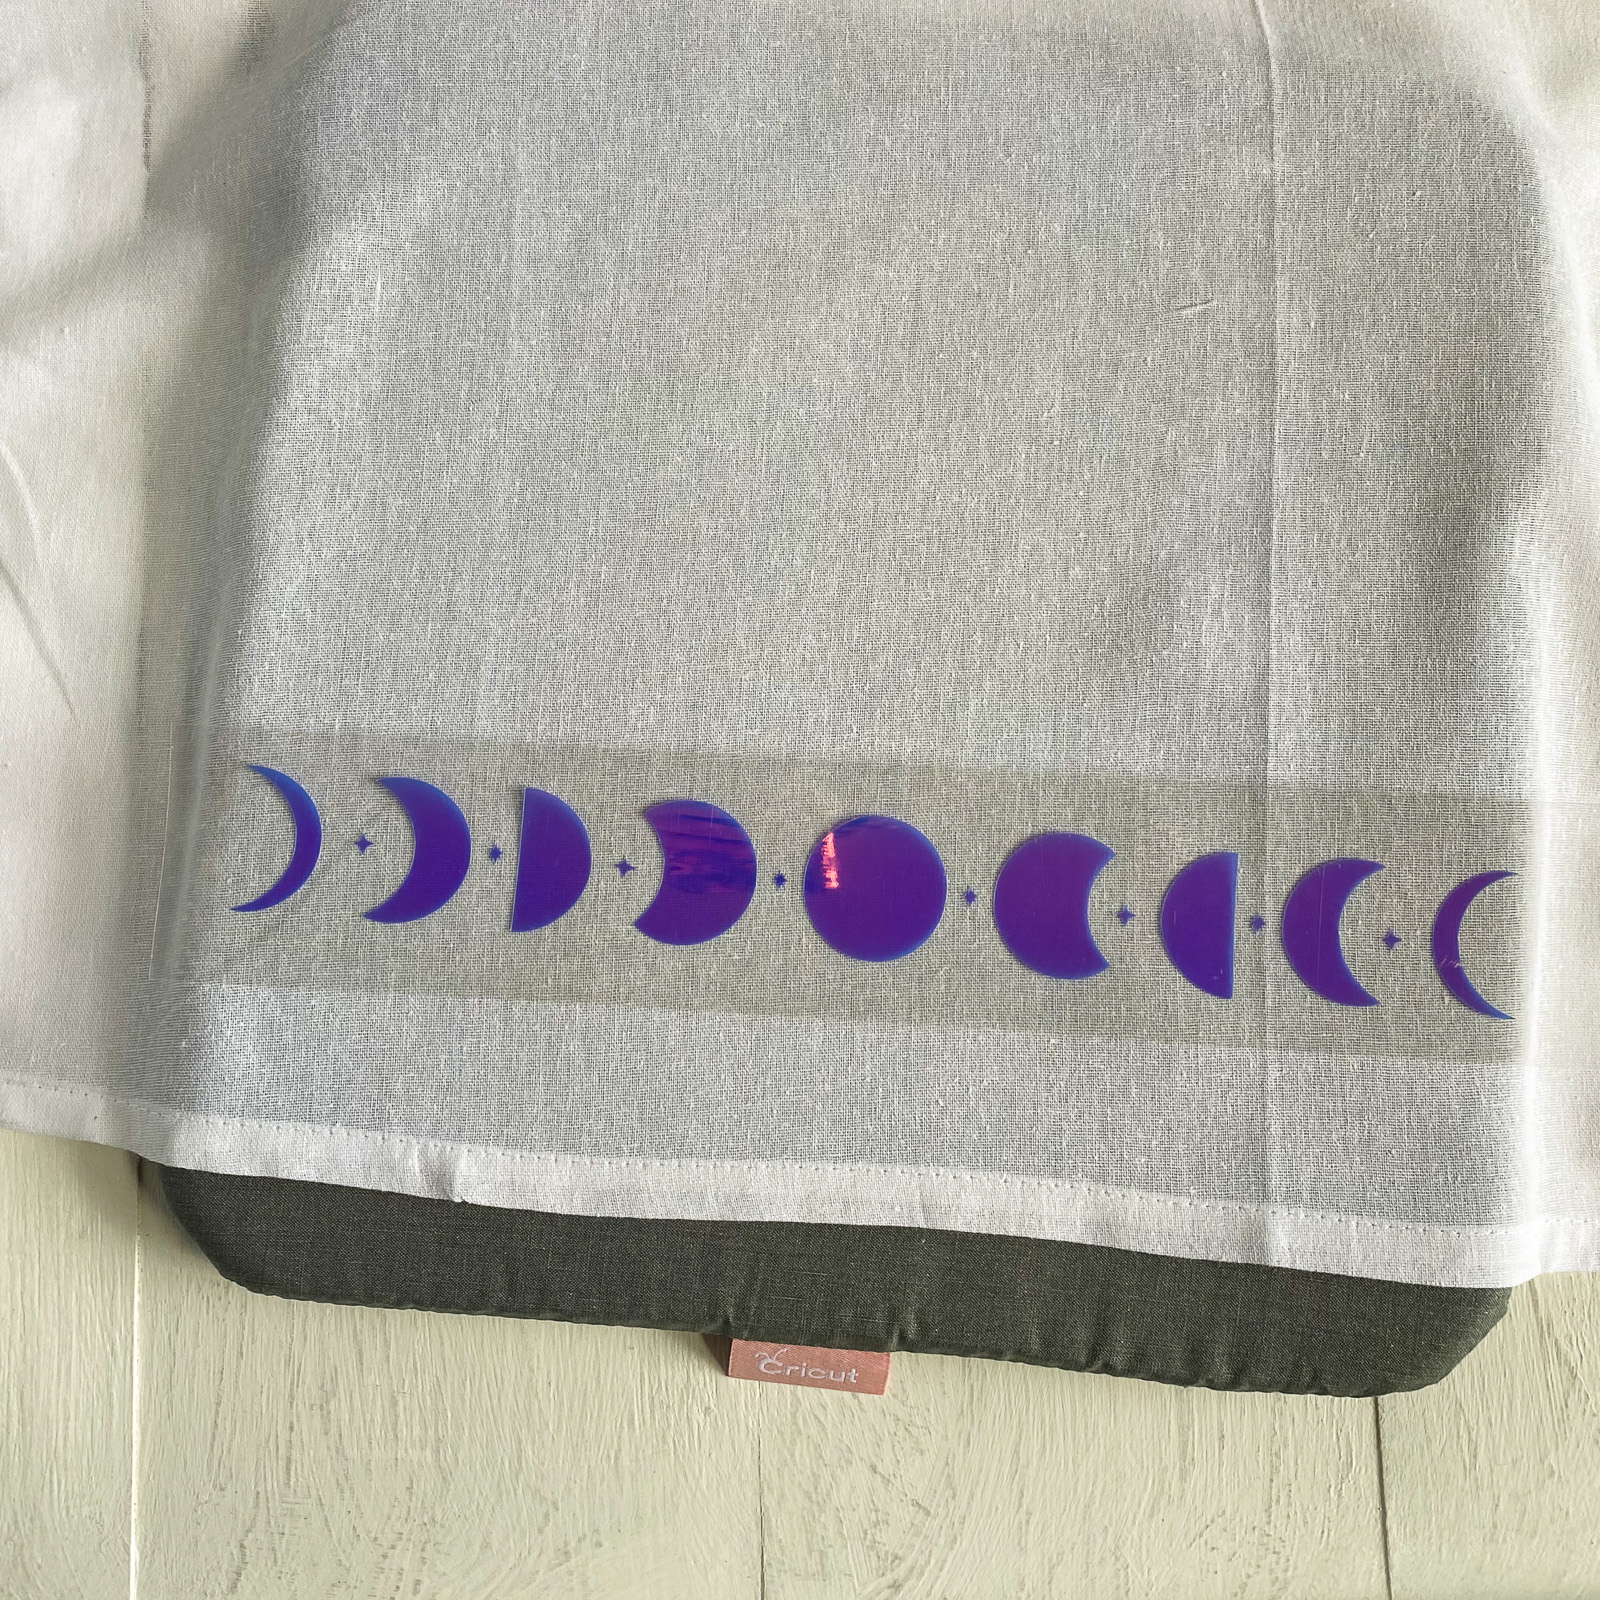 iron-on design on tea towel